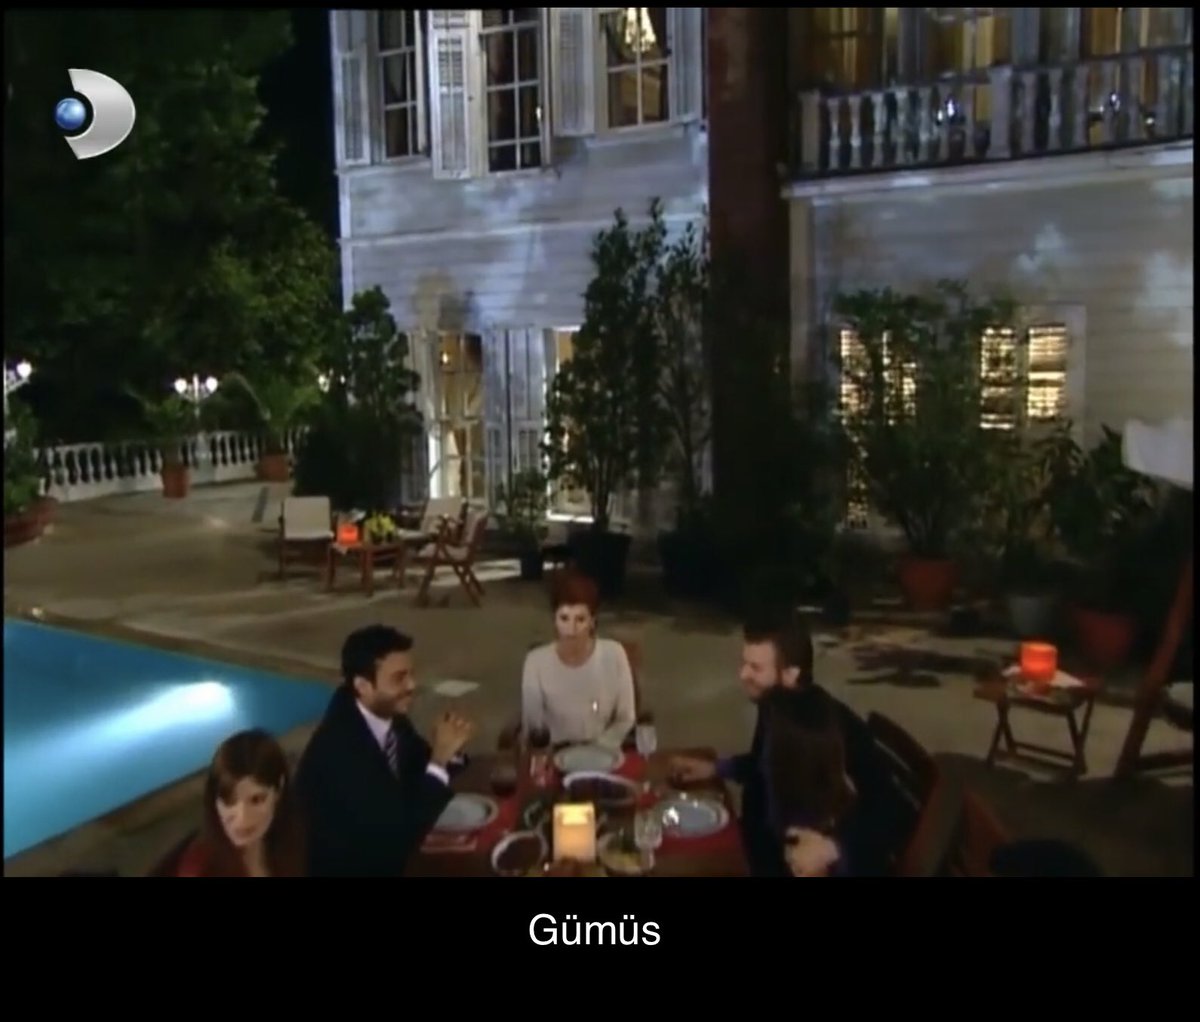  Pero Sila también ha vivido en la mansión Şadoğlu de Gümüs, incluso dormía en la misma habitación que Mehmet y Gümüs.